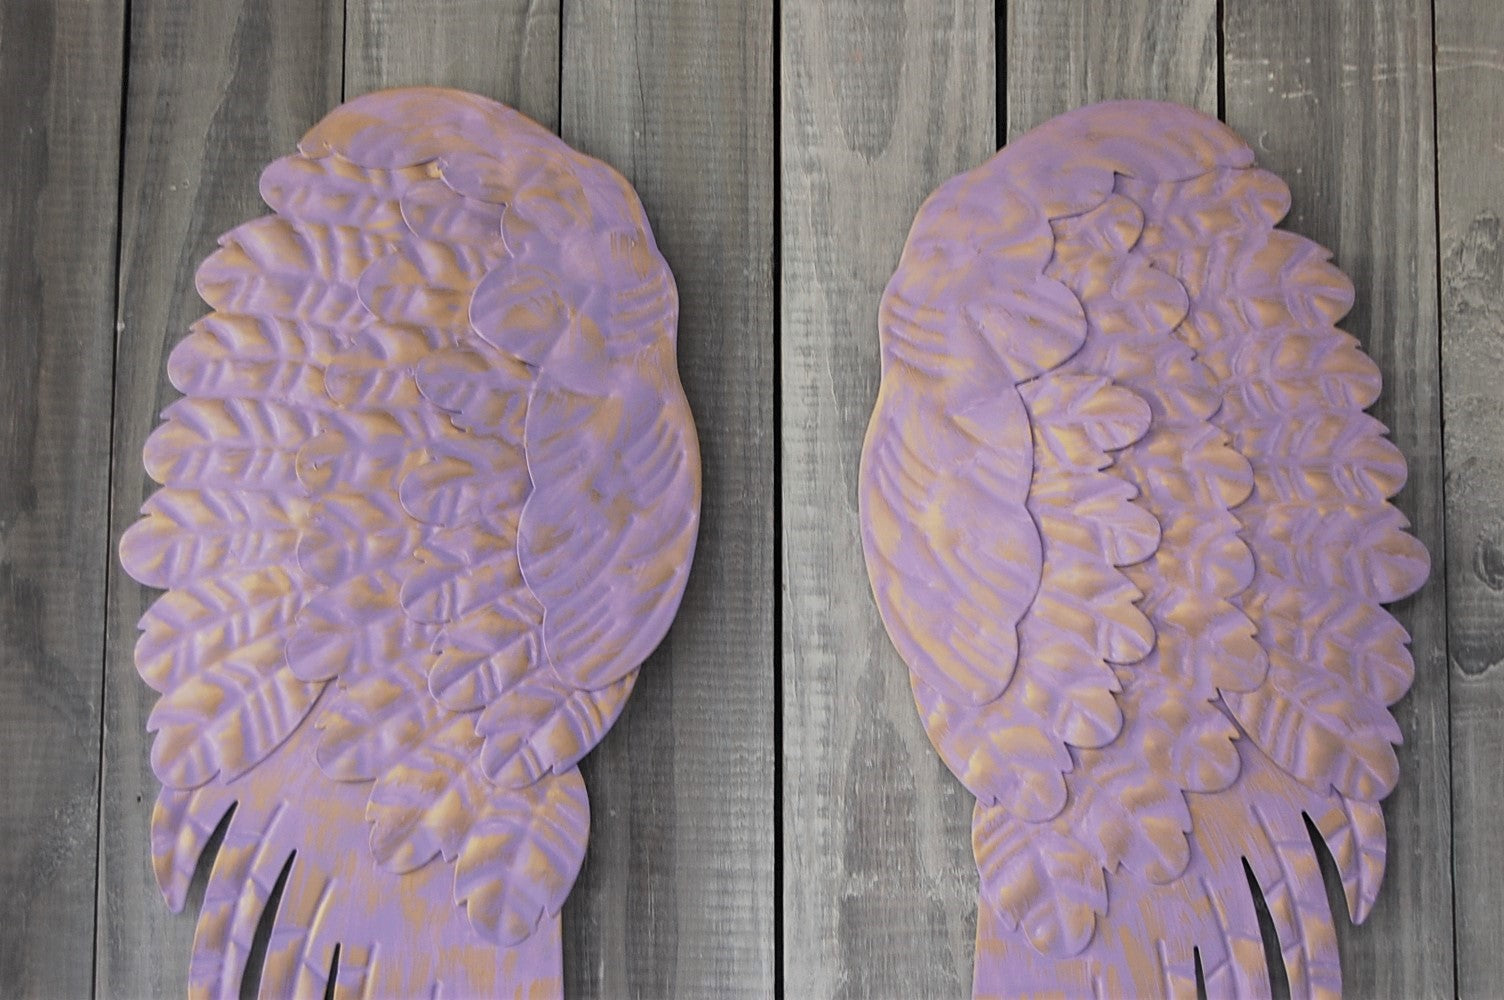 Lavender angel wings - The Vintage Artistry